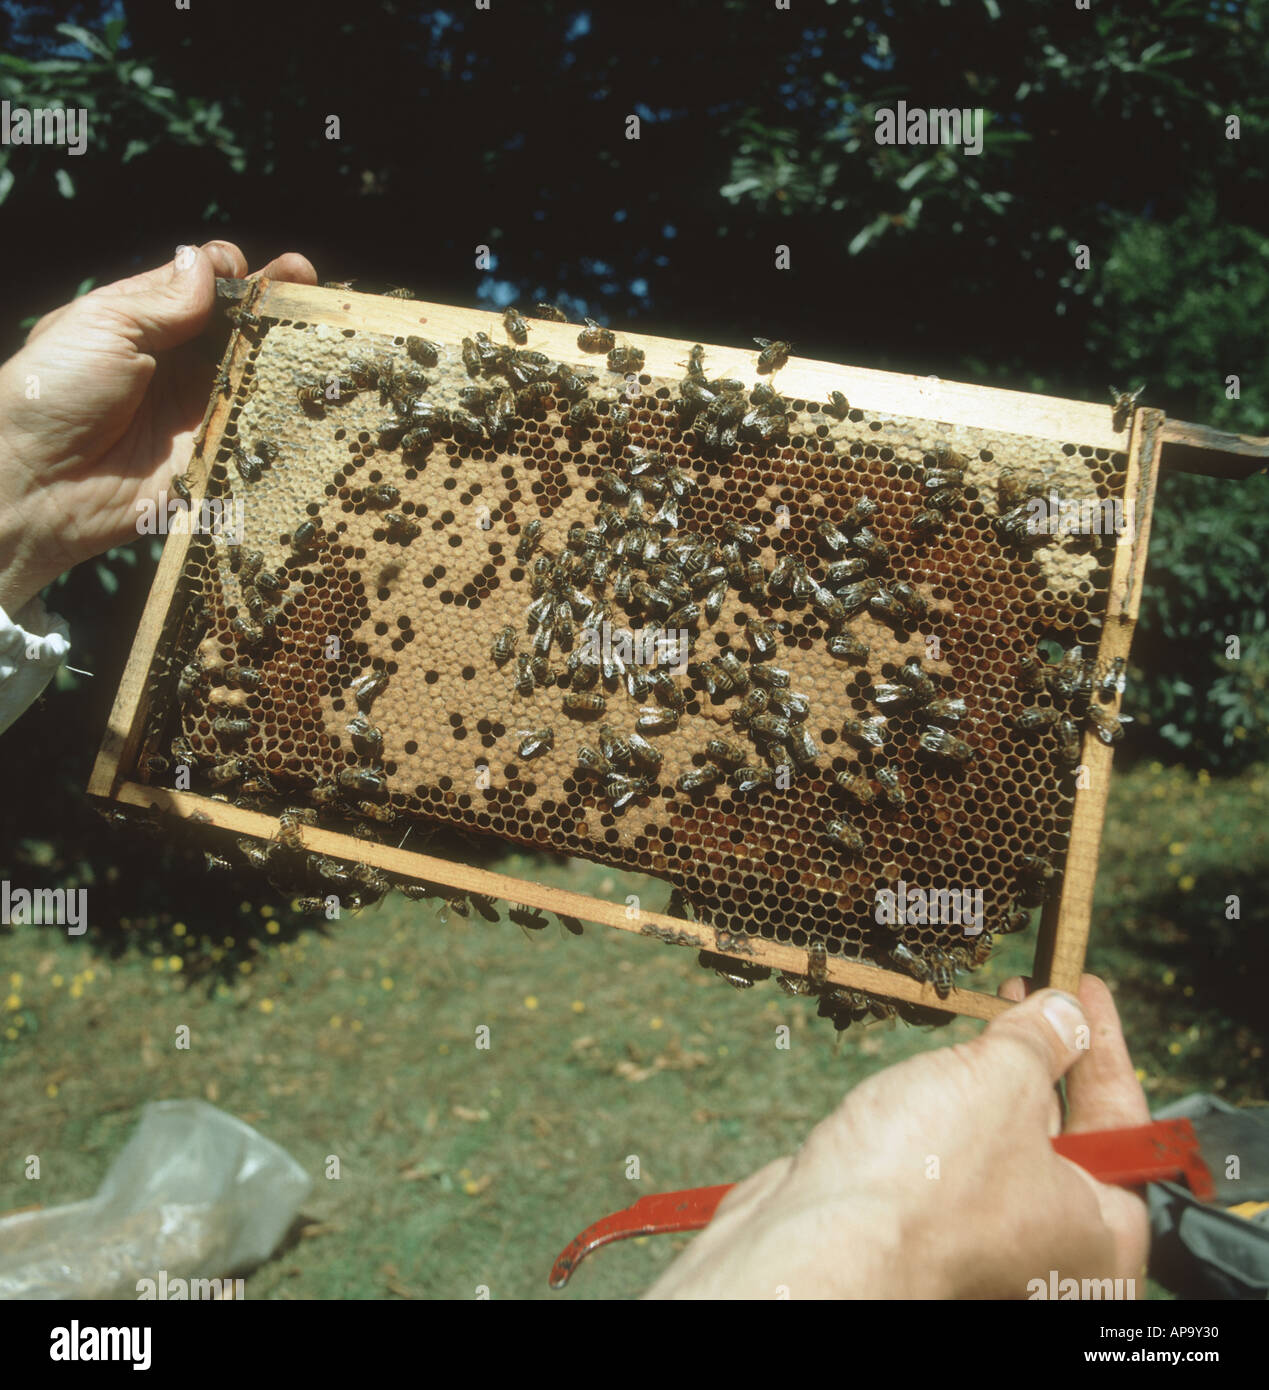 Imker Honig Biene Apis Mellifera Brut Rahmen aus nationalen Bienenstock zu prüfen Stockfoto